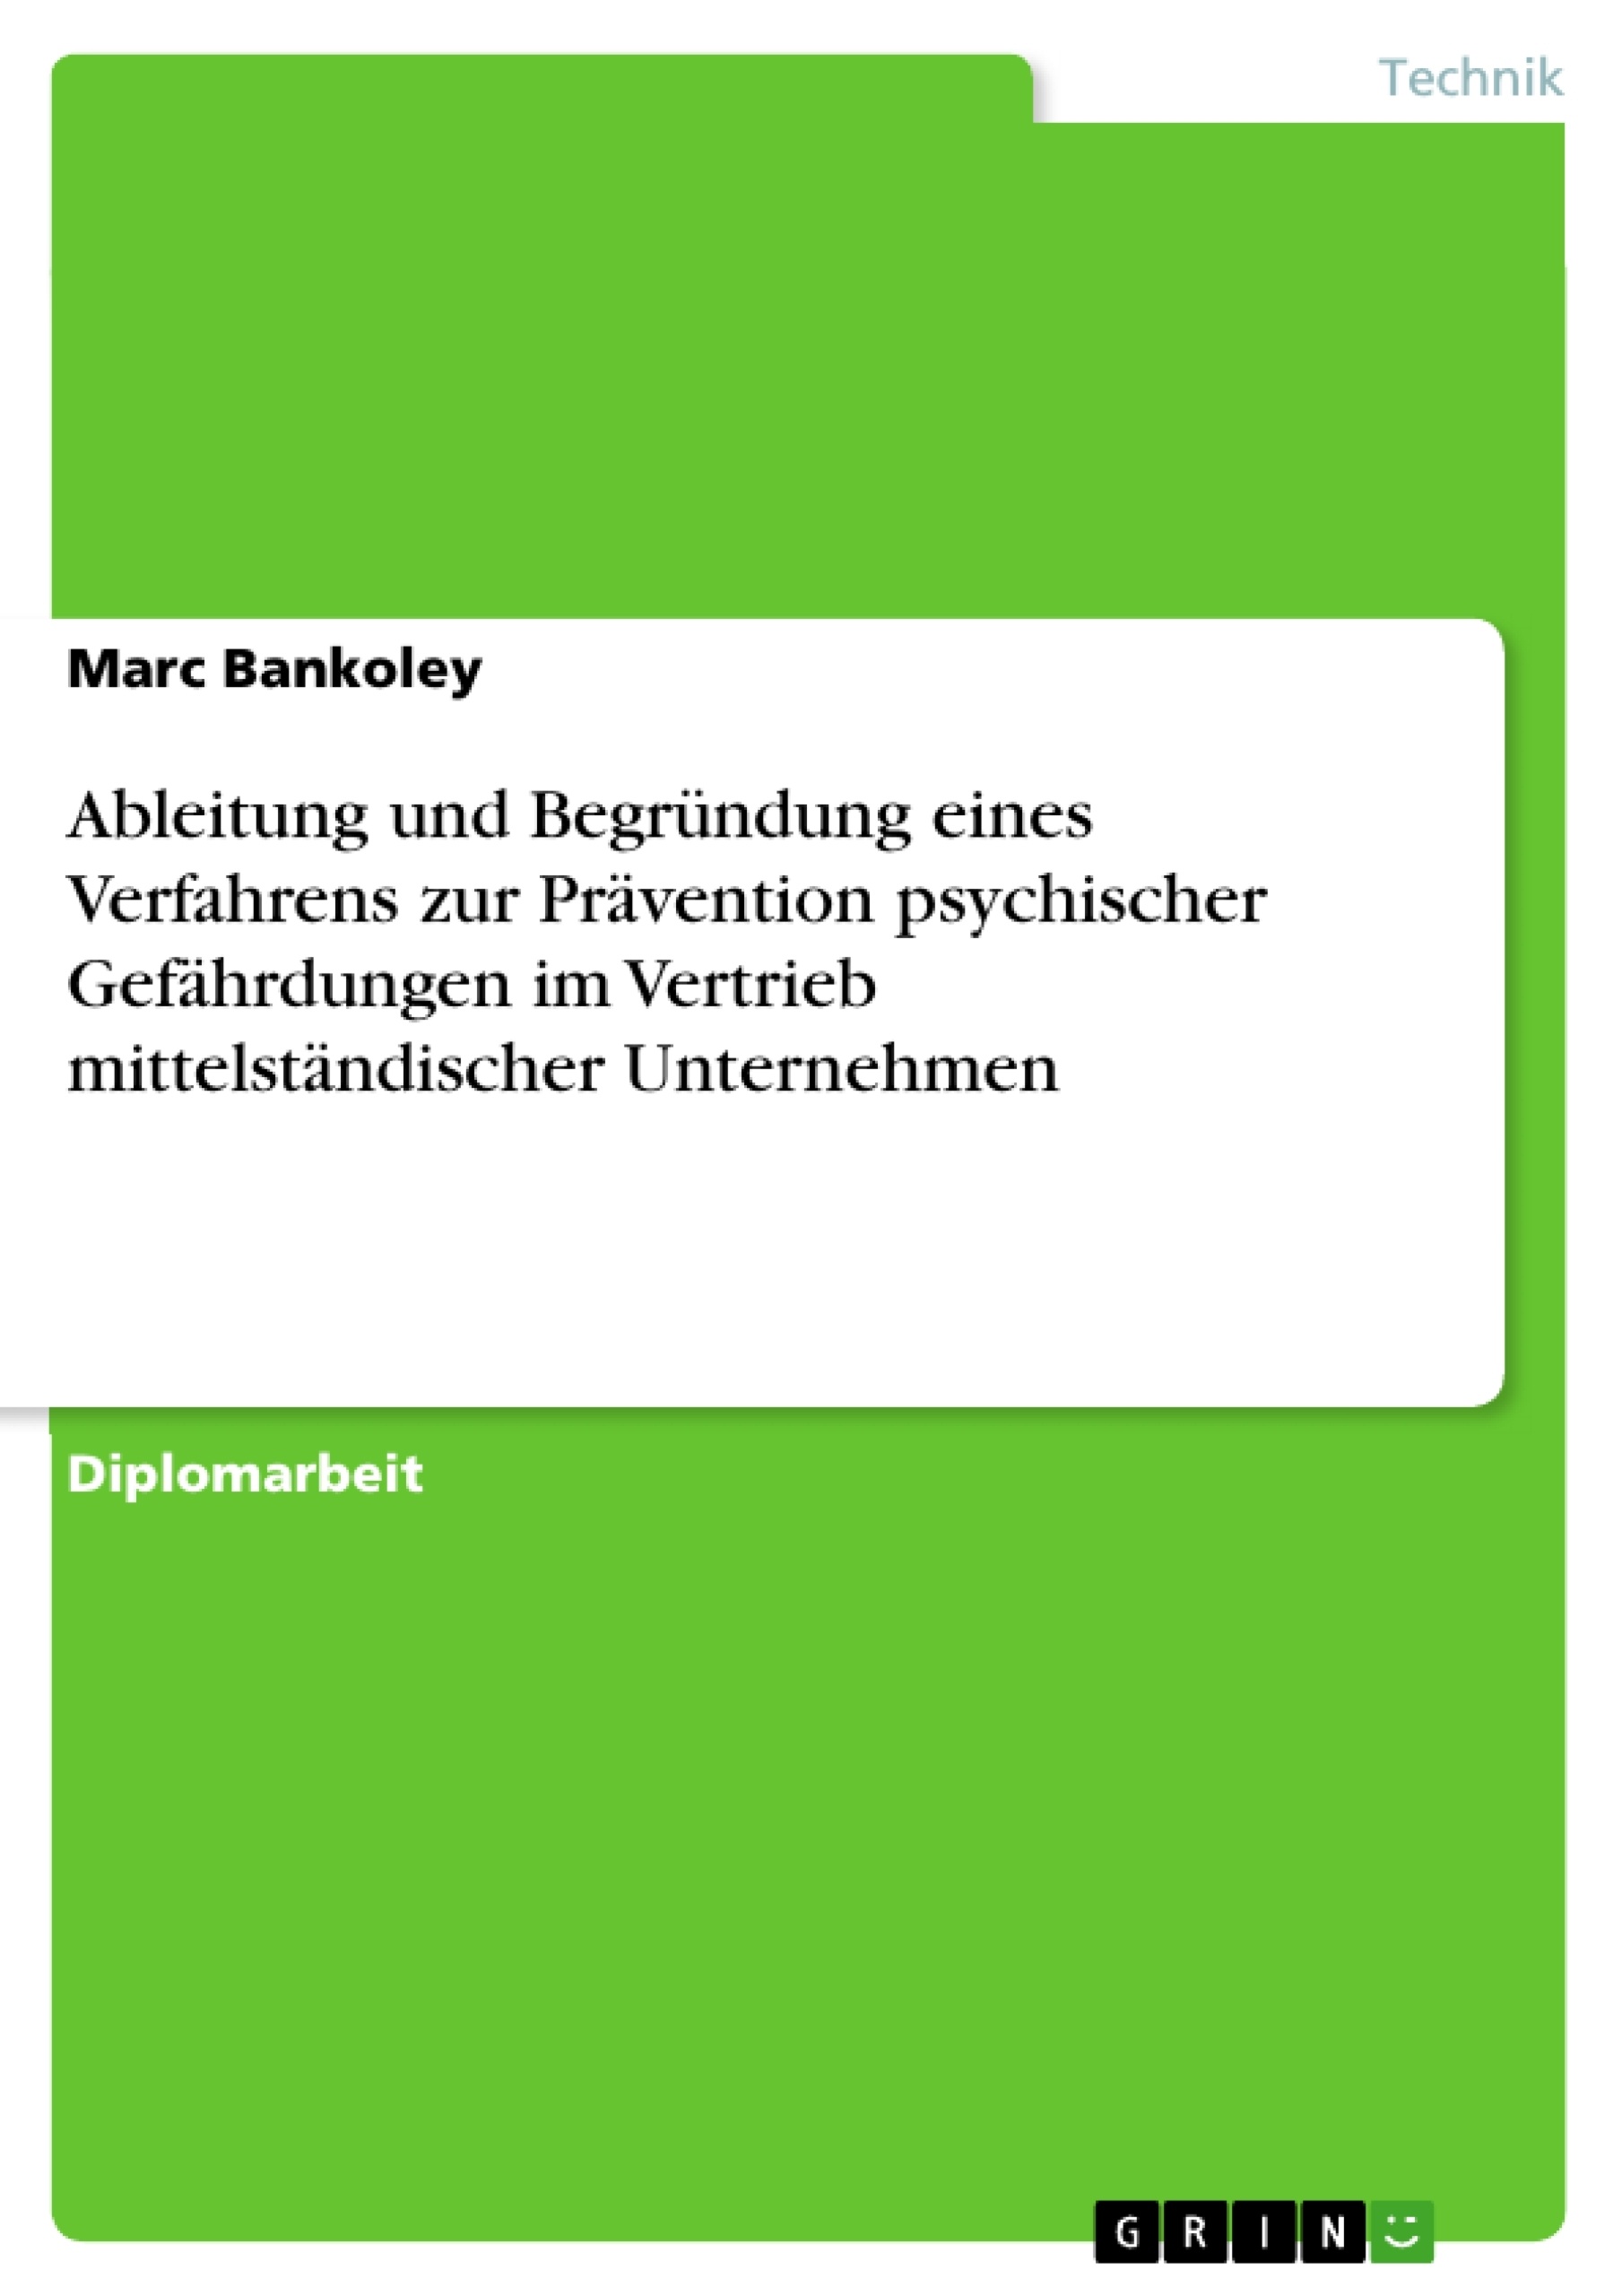 Title: Ableitung und Begründung eines Verfahrens zur Prävention psychischer Gefährdungen im Vertrieb mittelständischer Unternehmen